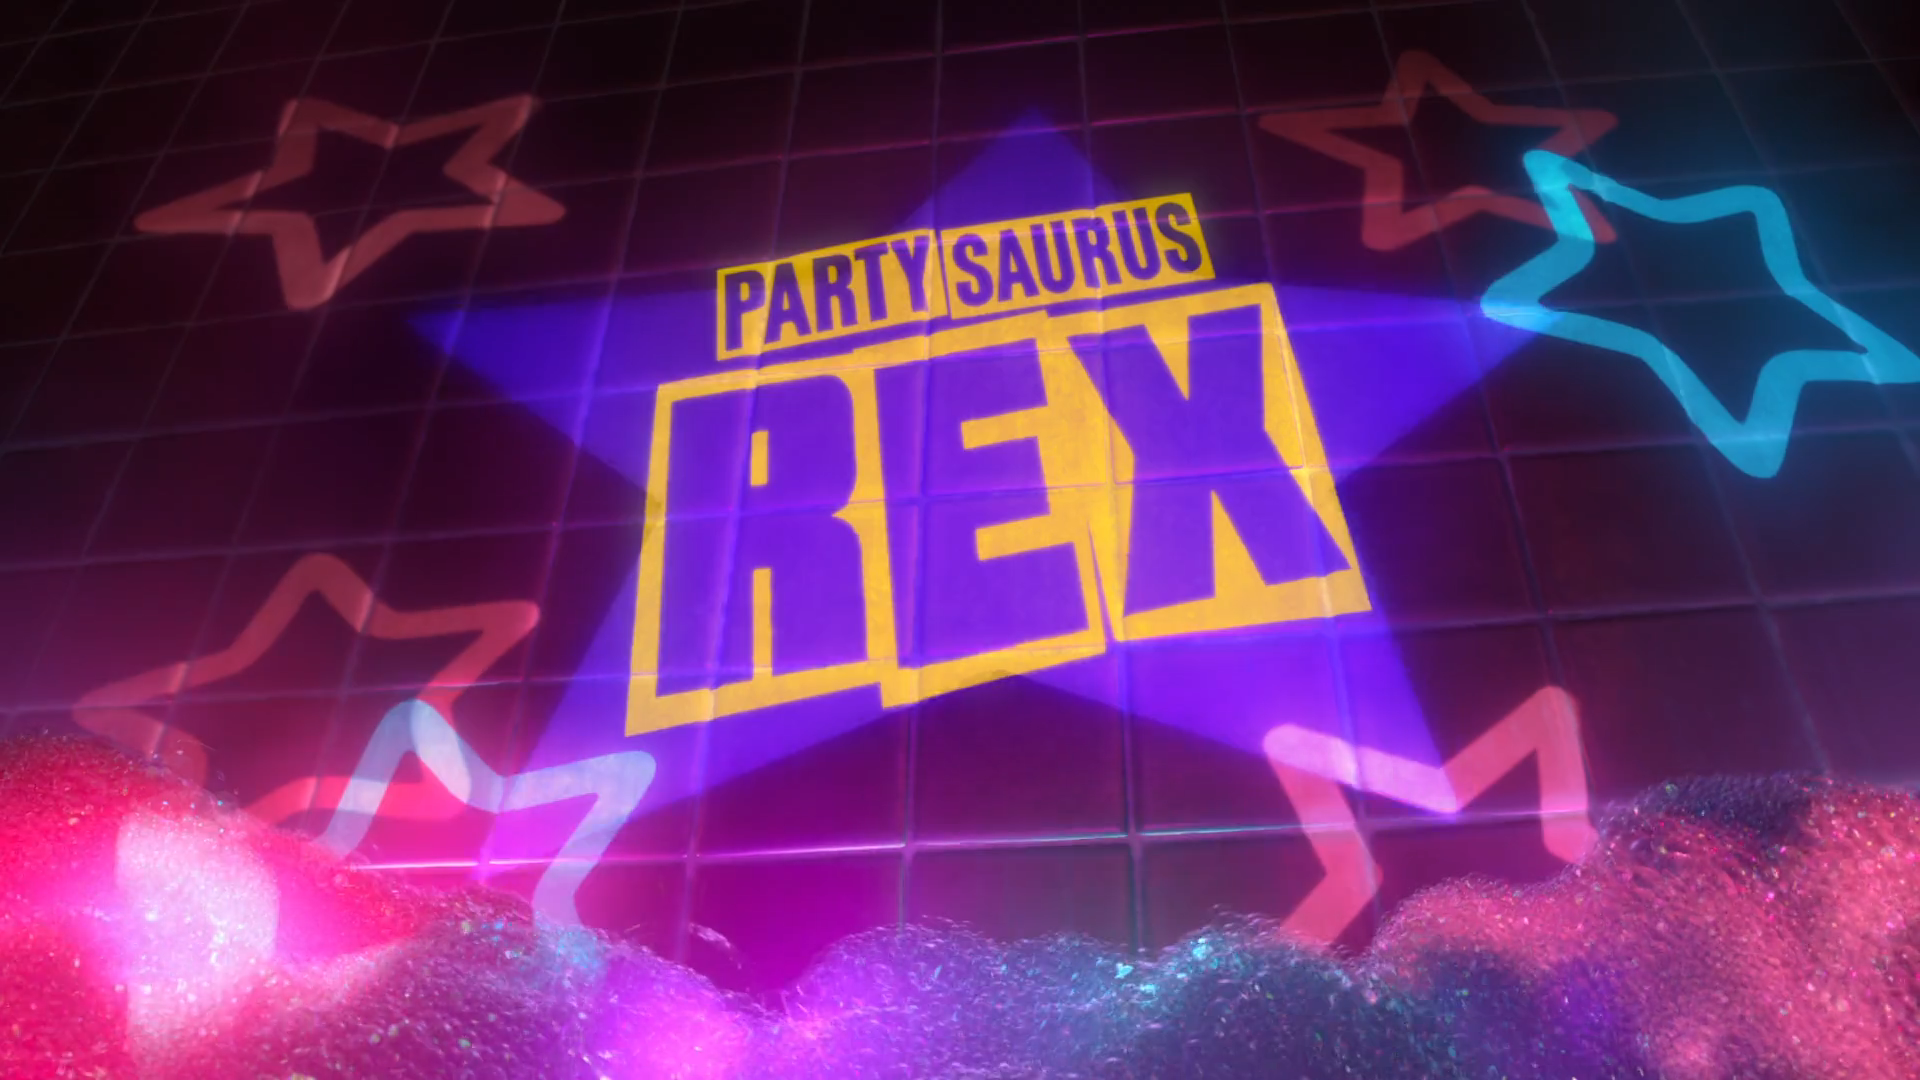 Partysaurus Rex - Wikipedia